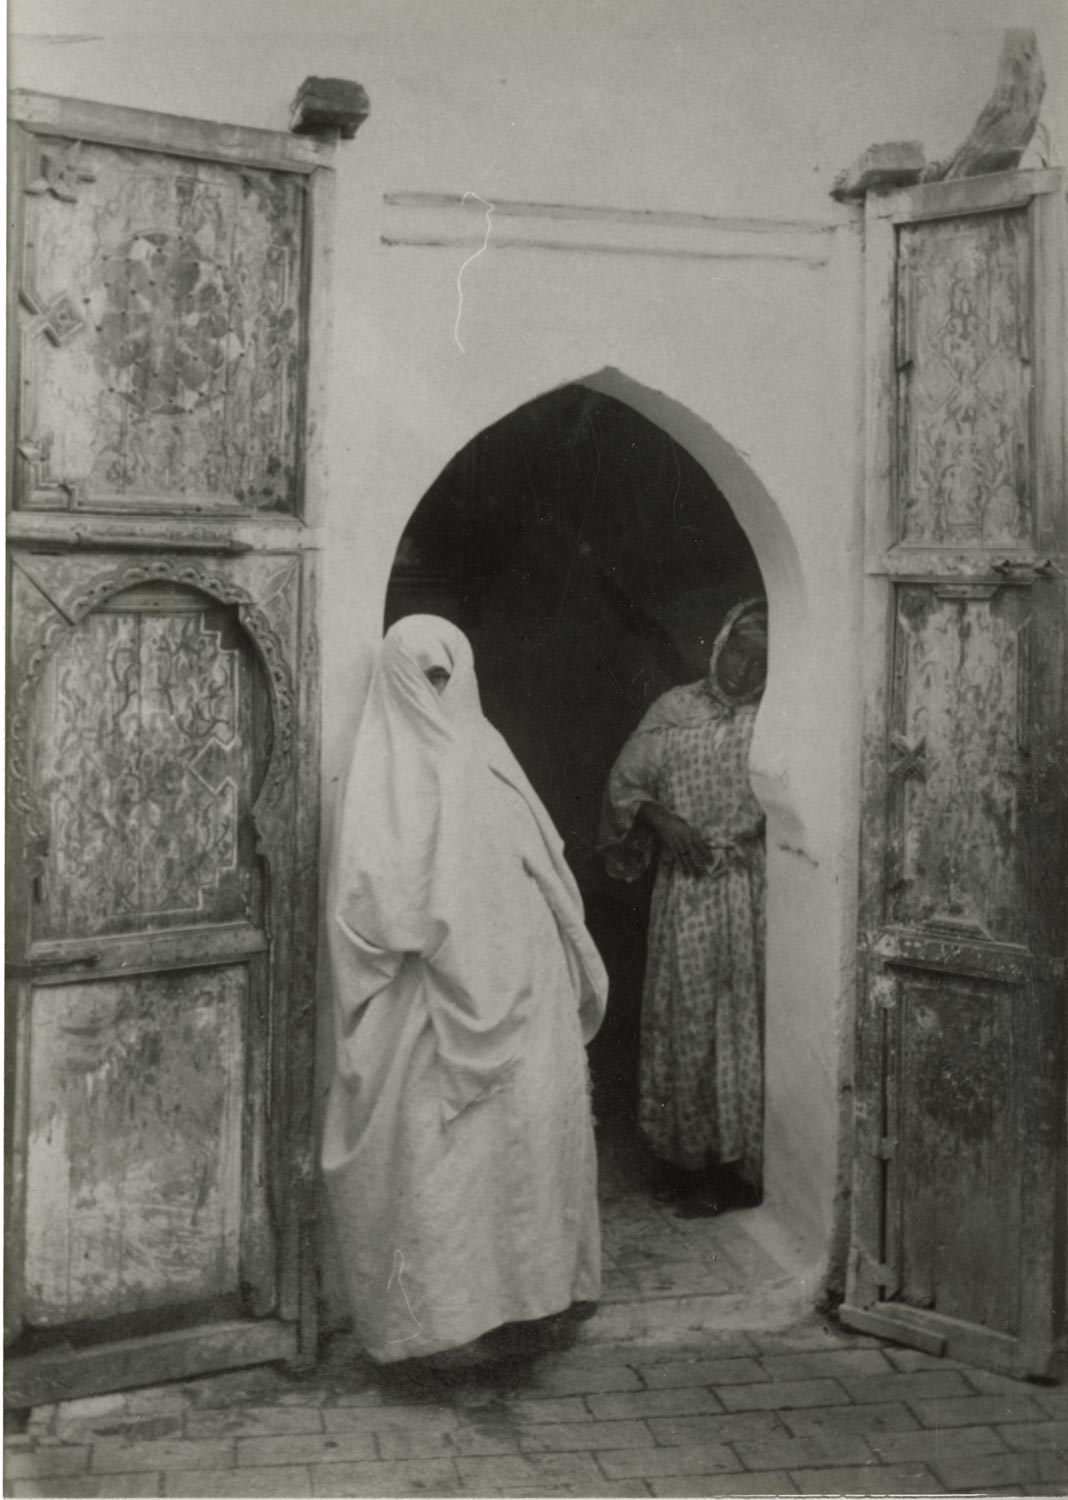 Two veiled women in a doorway